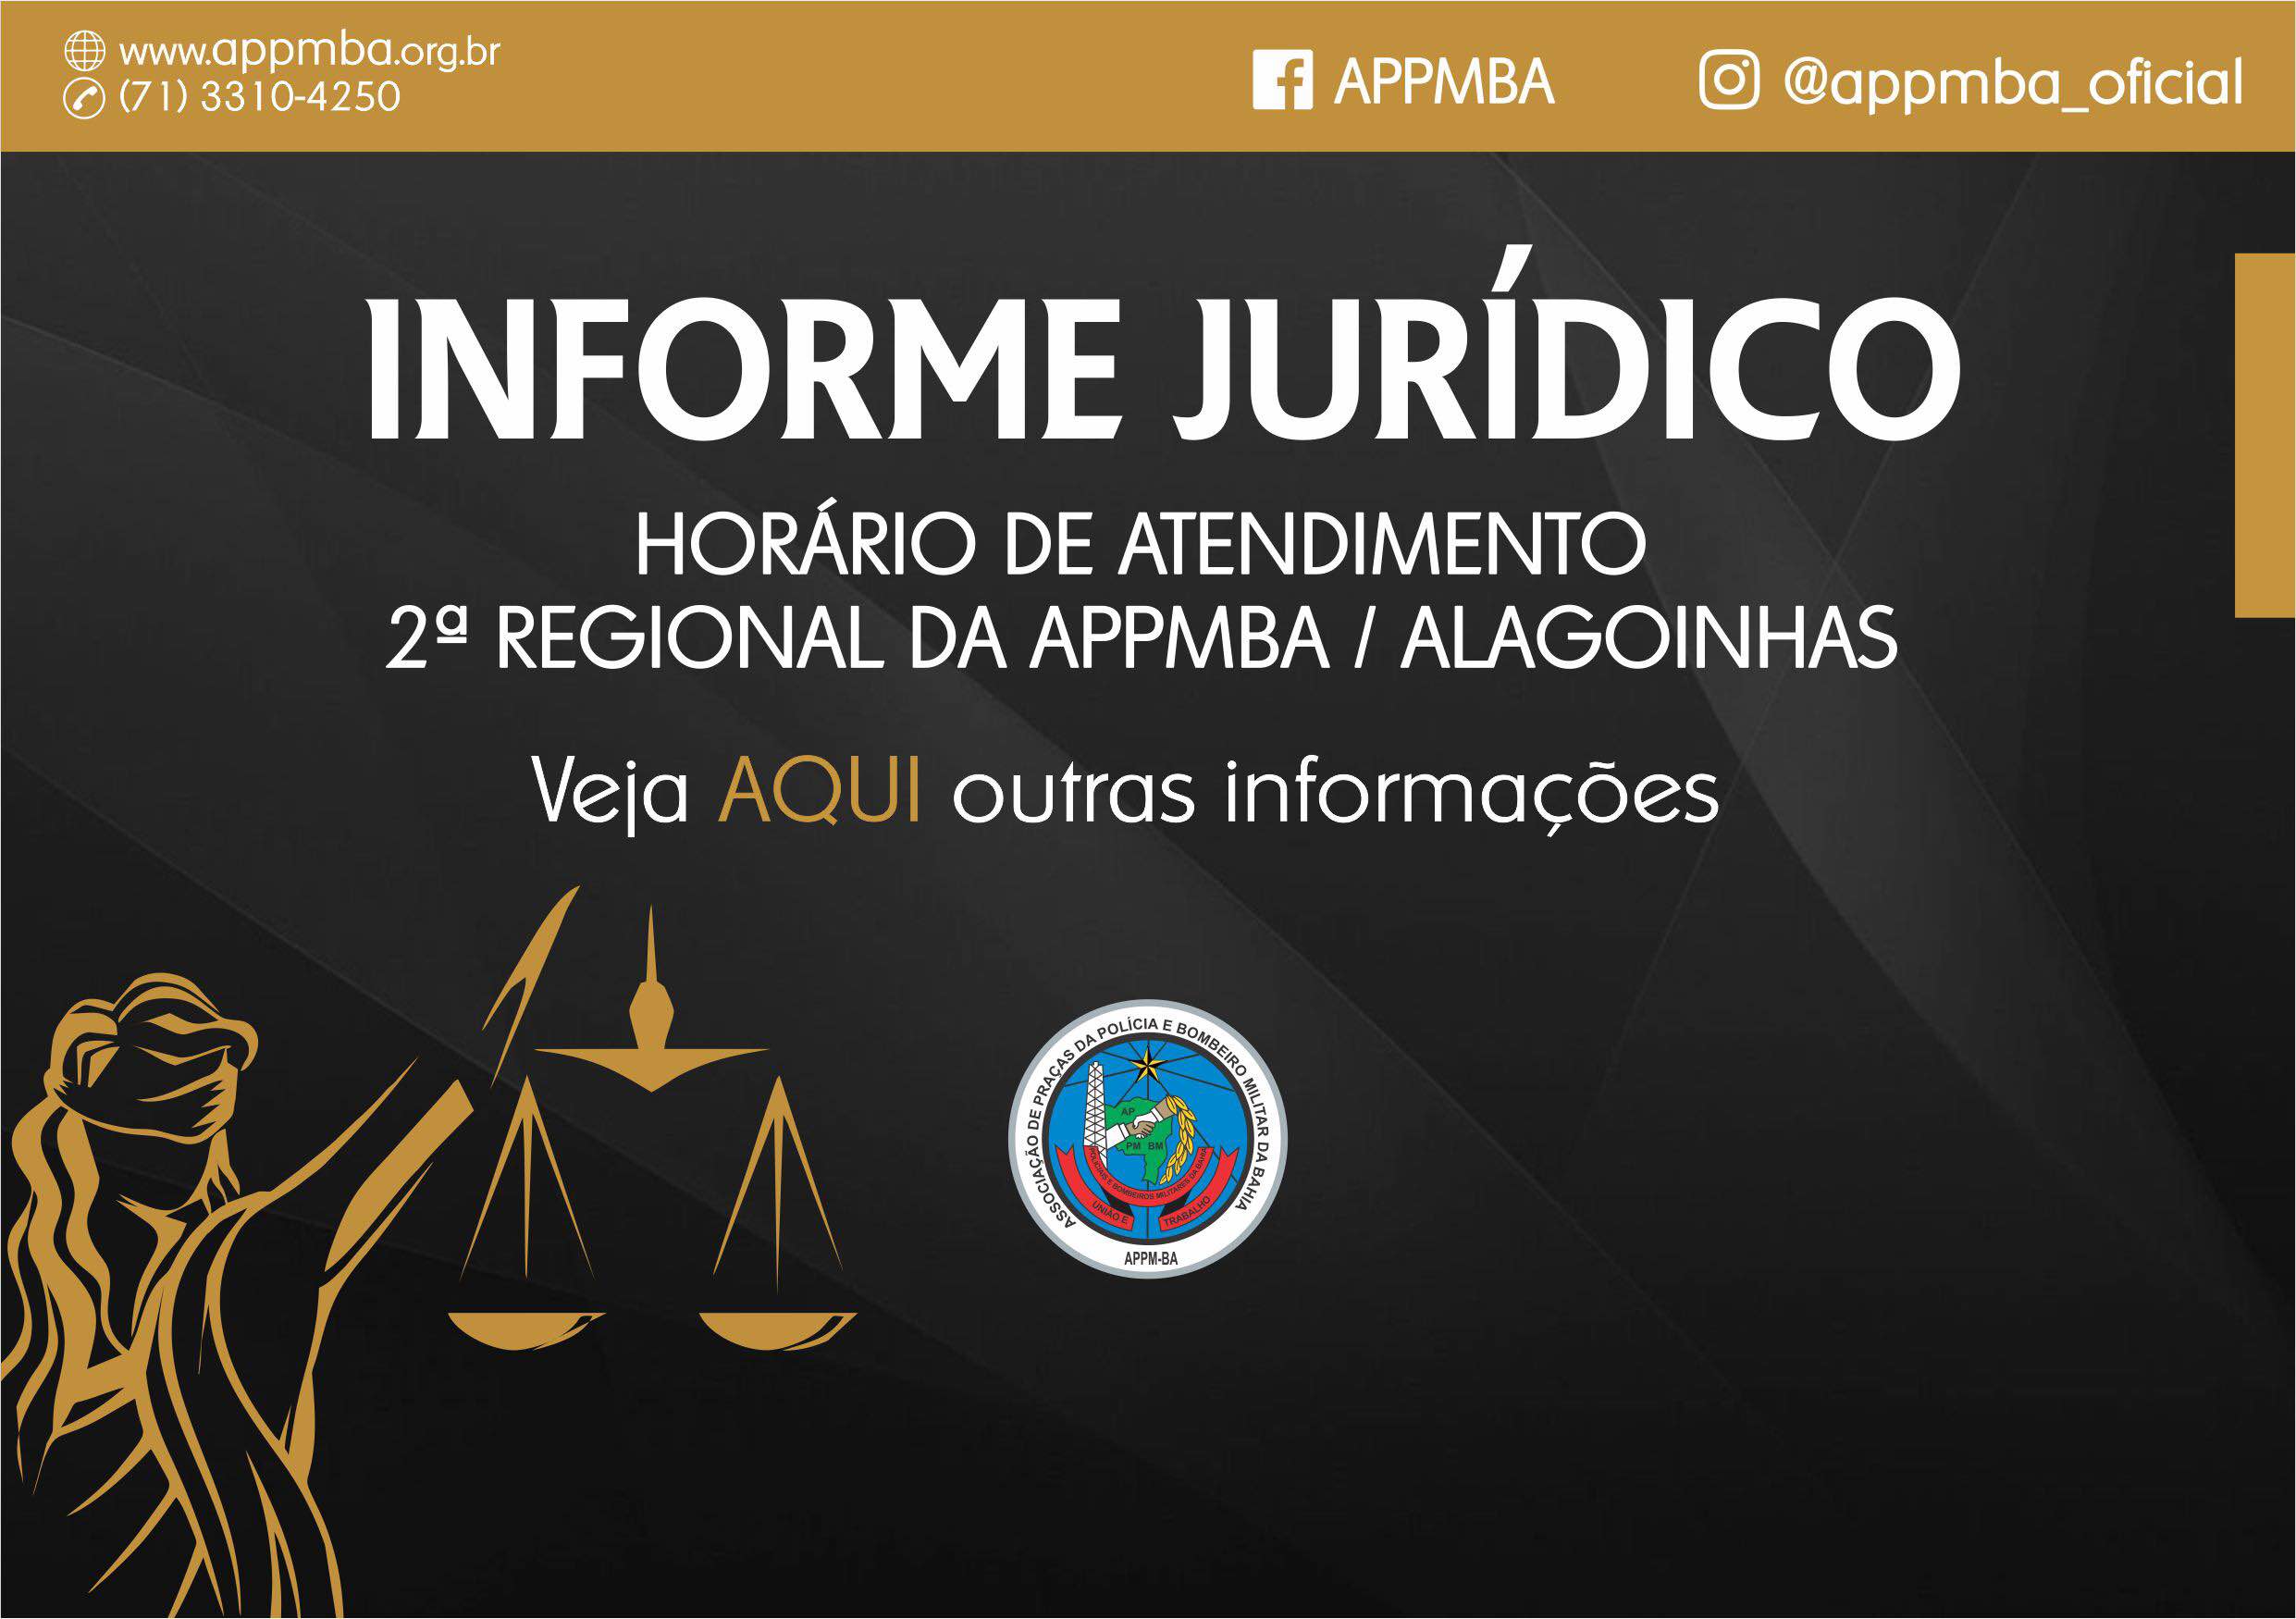 Informe Jurídico - Horário de atendimento 2.ª Regional da APPMBA / Alagoinhas